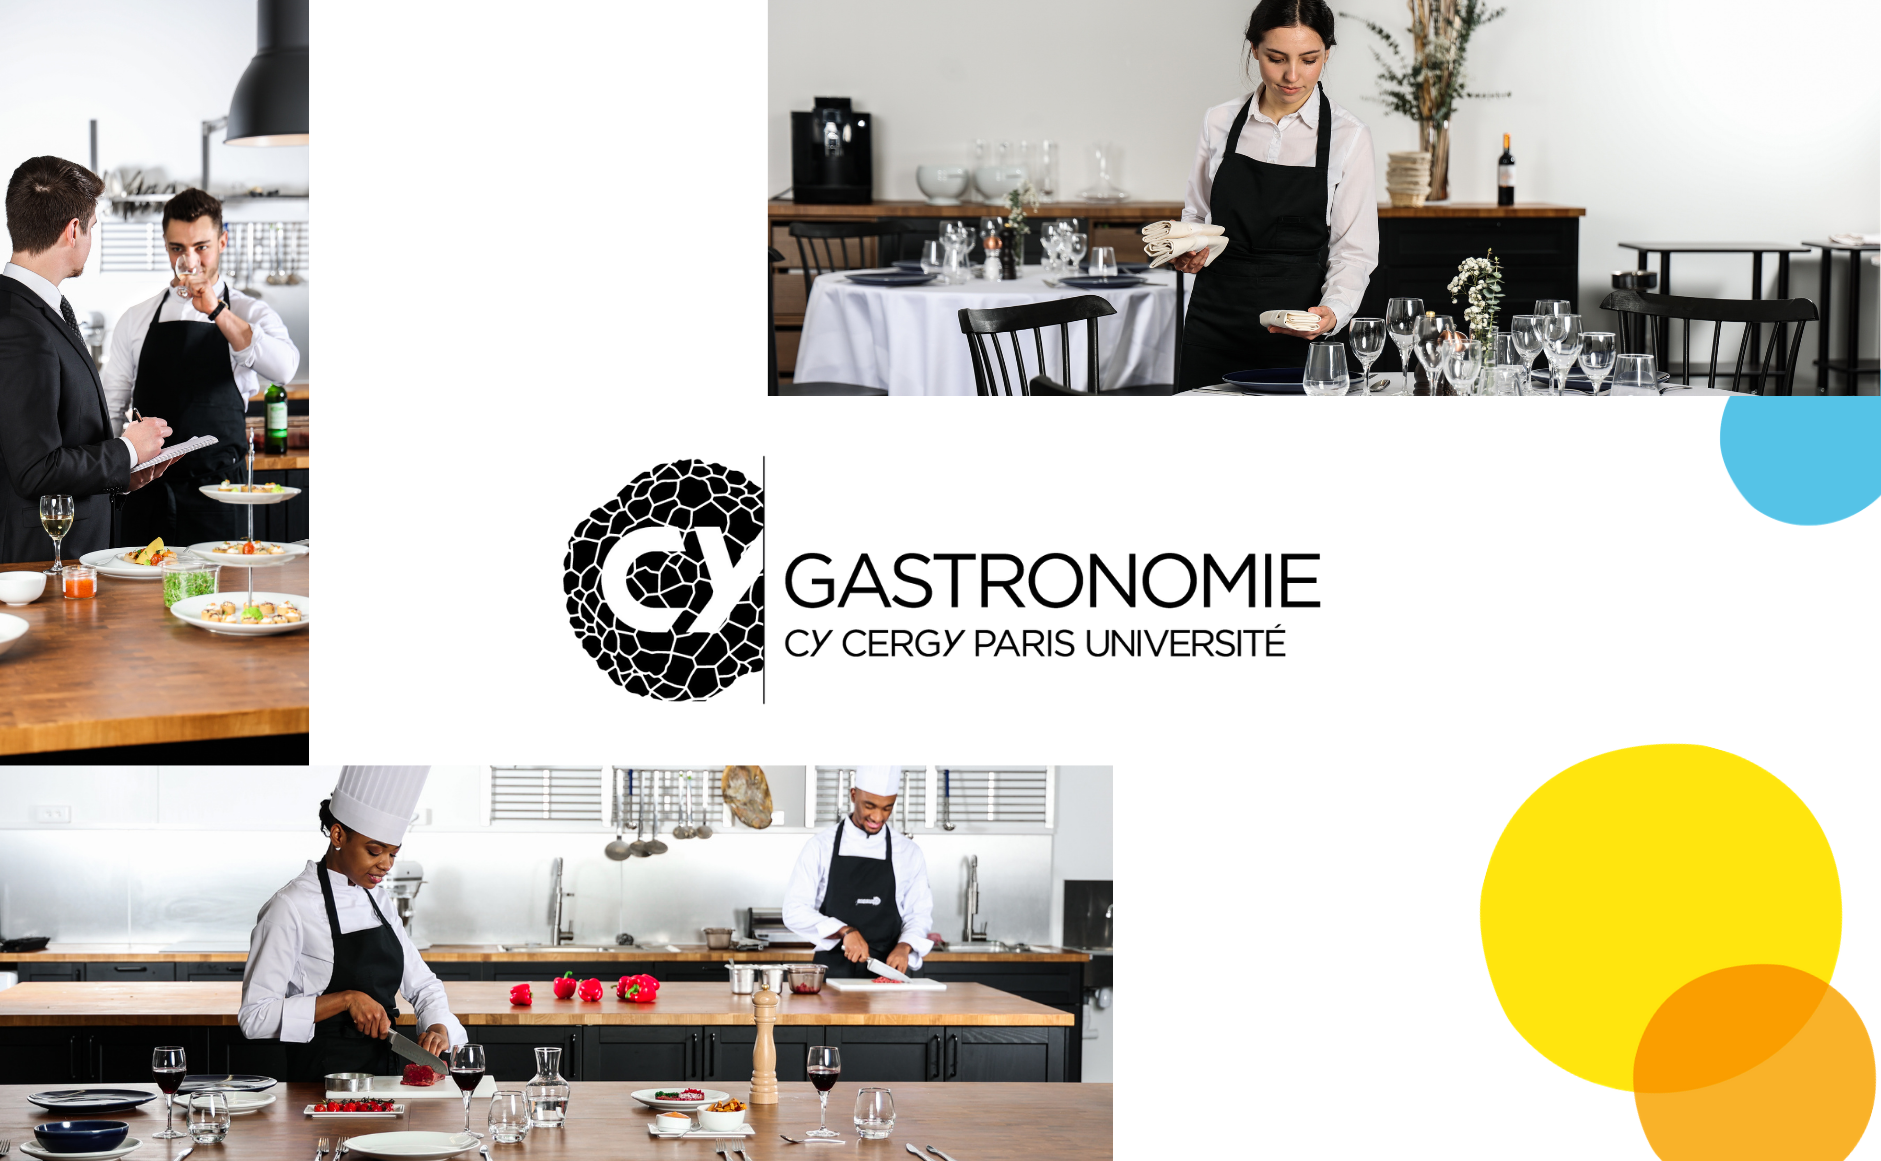 [FORMATION] CY Gastronomie : apprendre par le projet